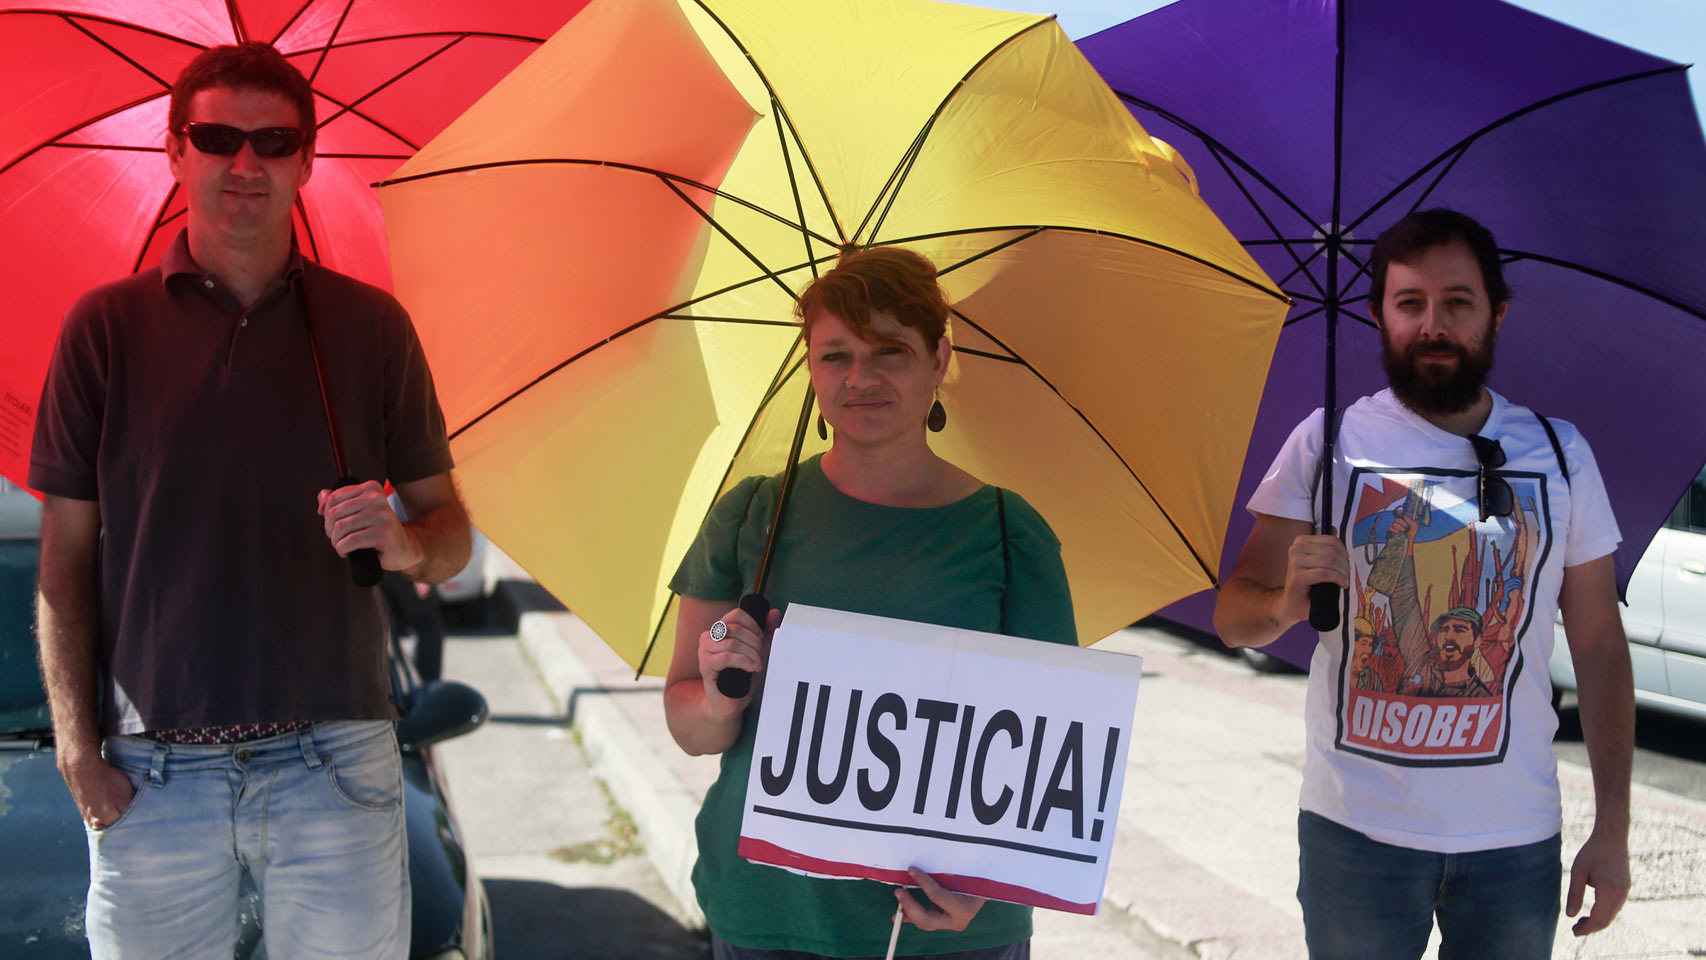 Silvia junto a otros dos compañeros en la manifestación con los paraguas republicanos